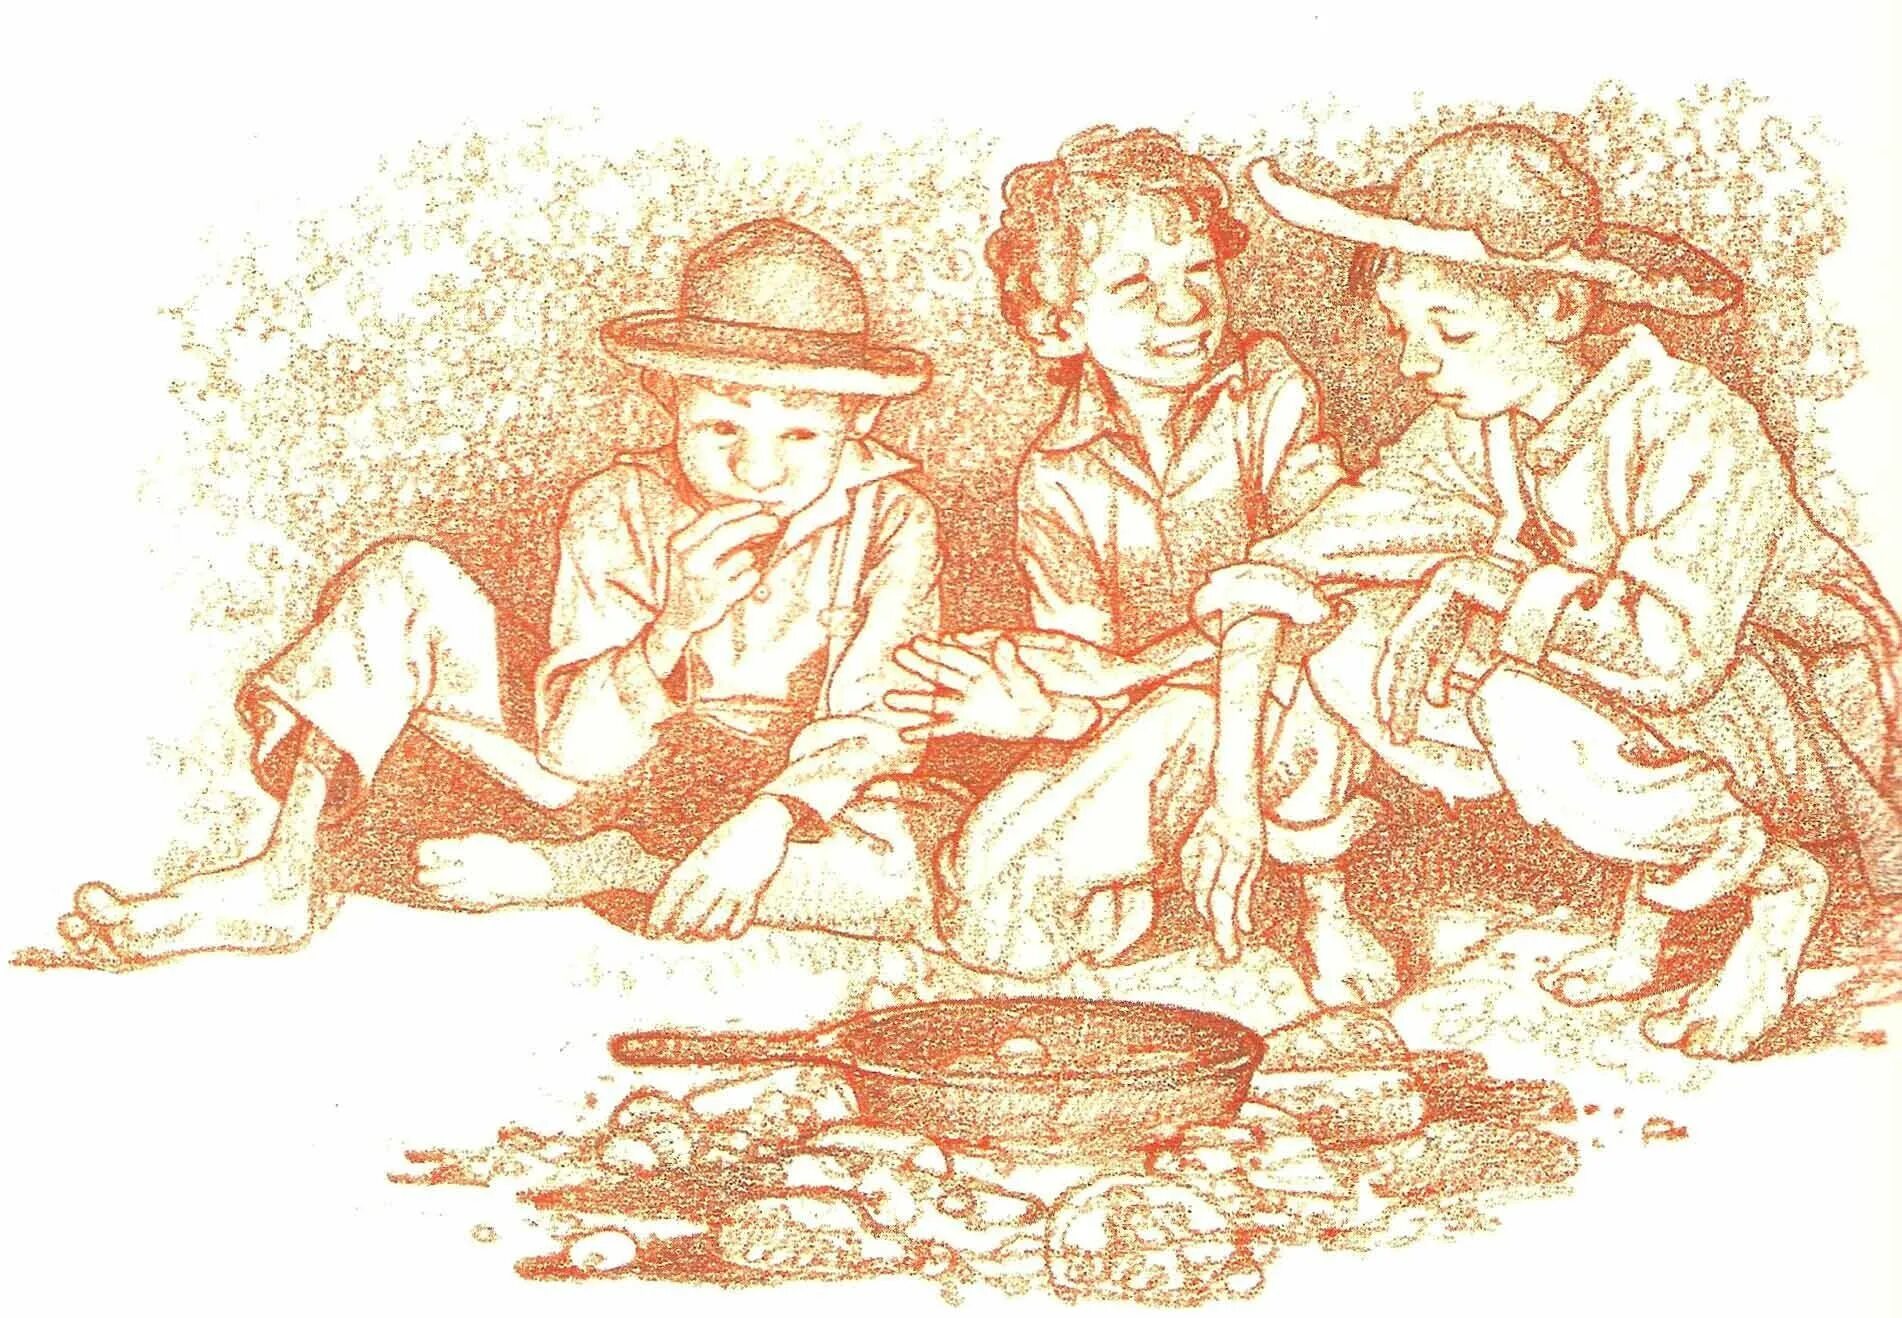 Рисунок тома сойера 4 класс. ТМ сйер. Том Сойер и Гек Финн иллюстрации. Том Сойер на острове. Иллюстрация Тома Сойера.